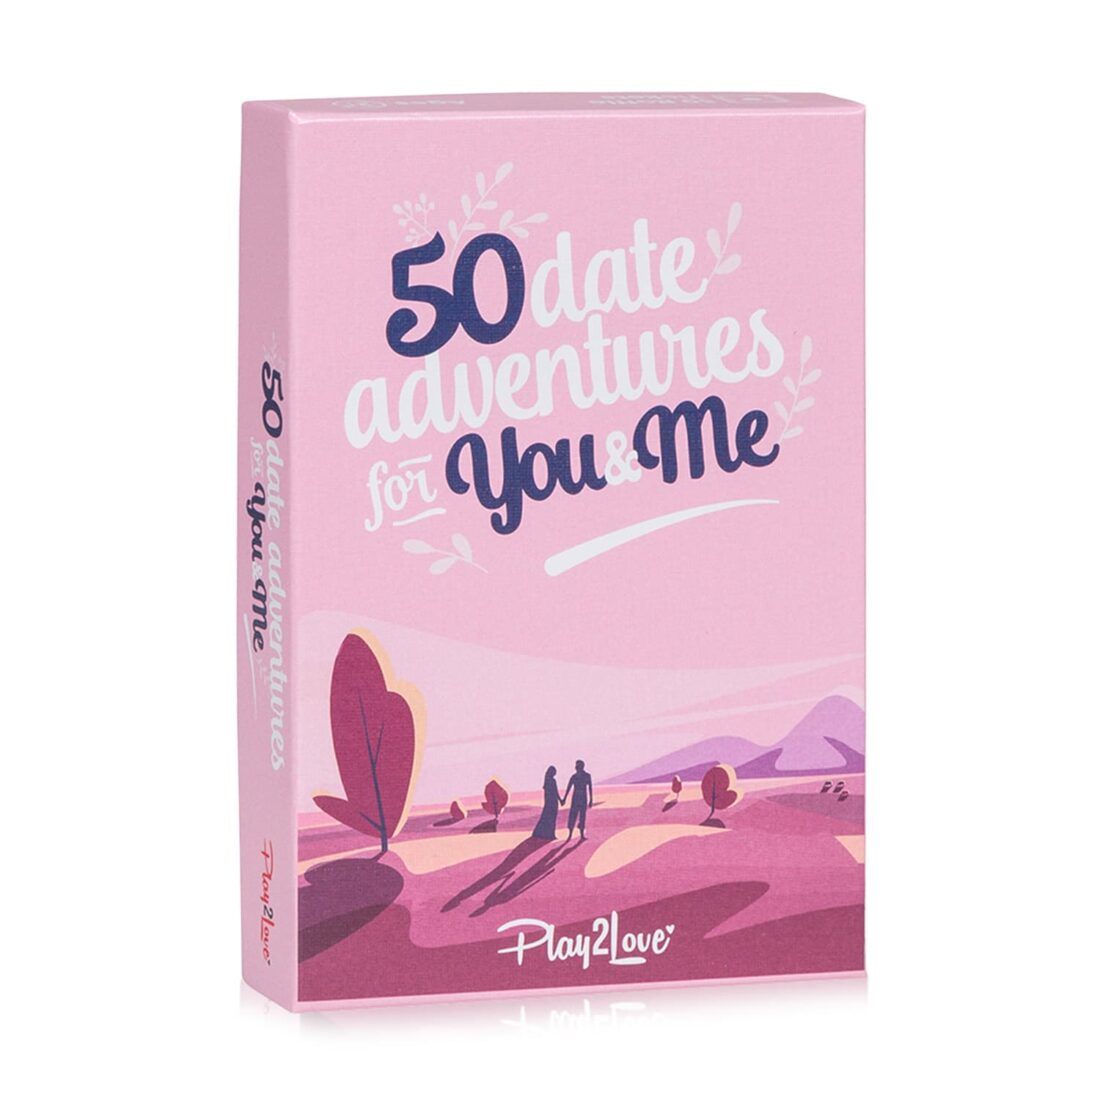 Spielehelden 50 Date Adventures for You & Me